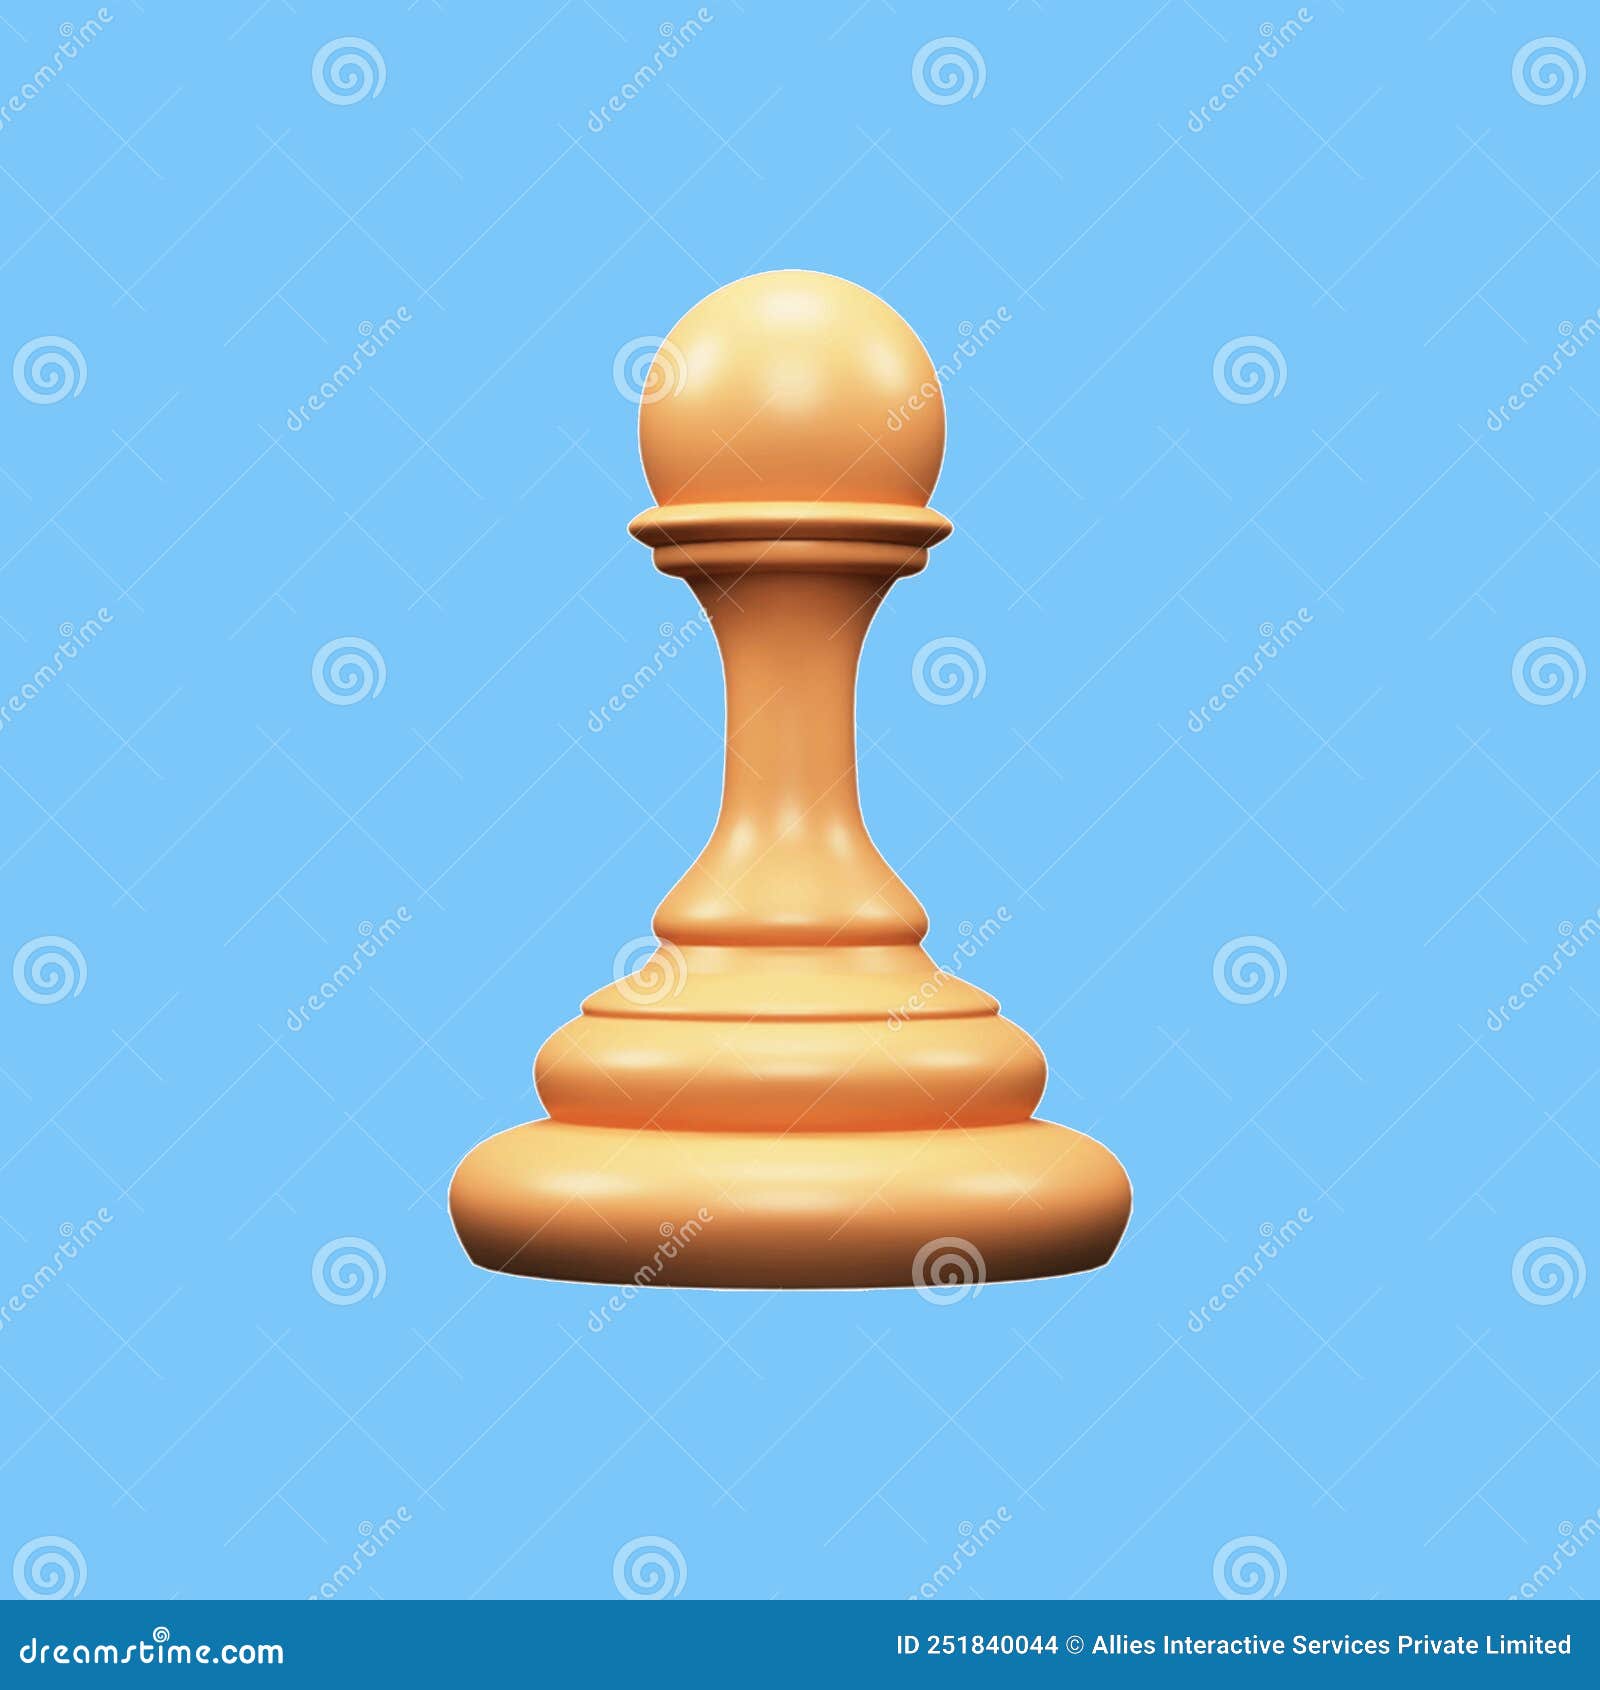 Fundo A Arte Da Liderança Estratégica No Xadrez 3d Fundo, Torneio De Xadrez,  Jogo De Xadrez, Xadrez Imagem de plano de fundo para download gratuito